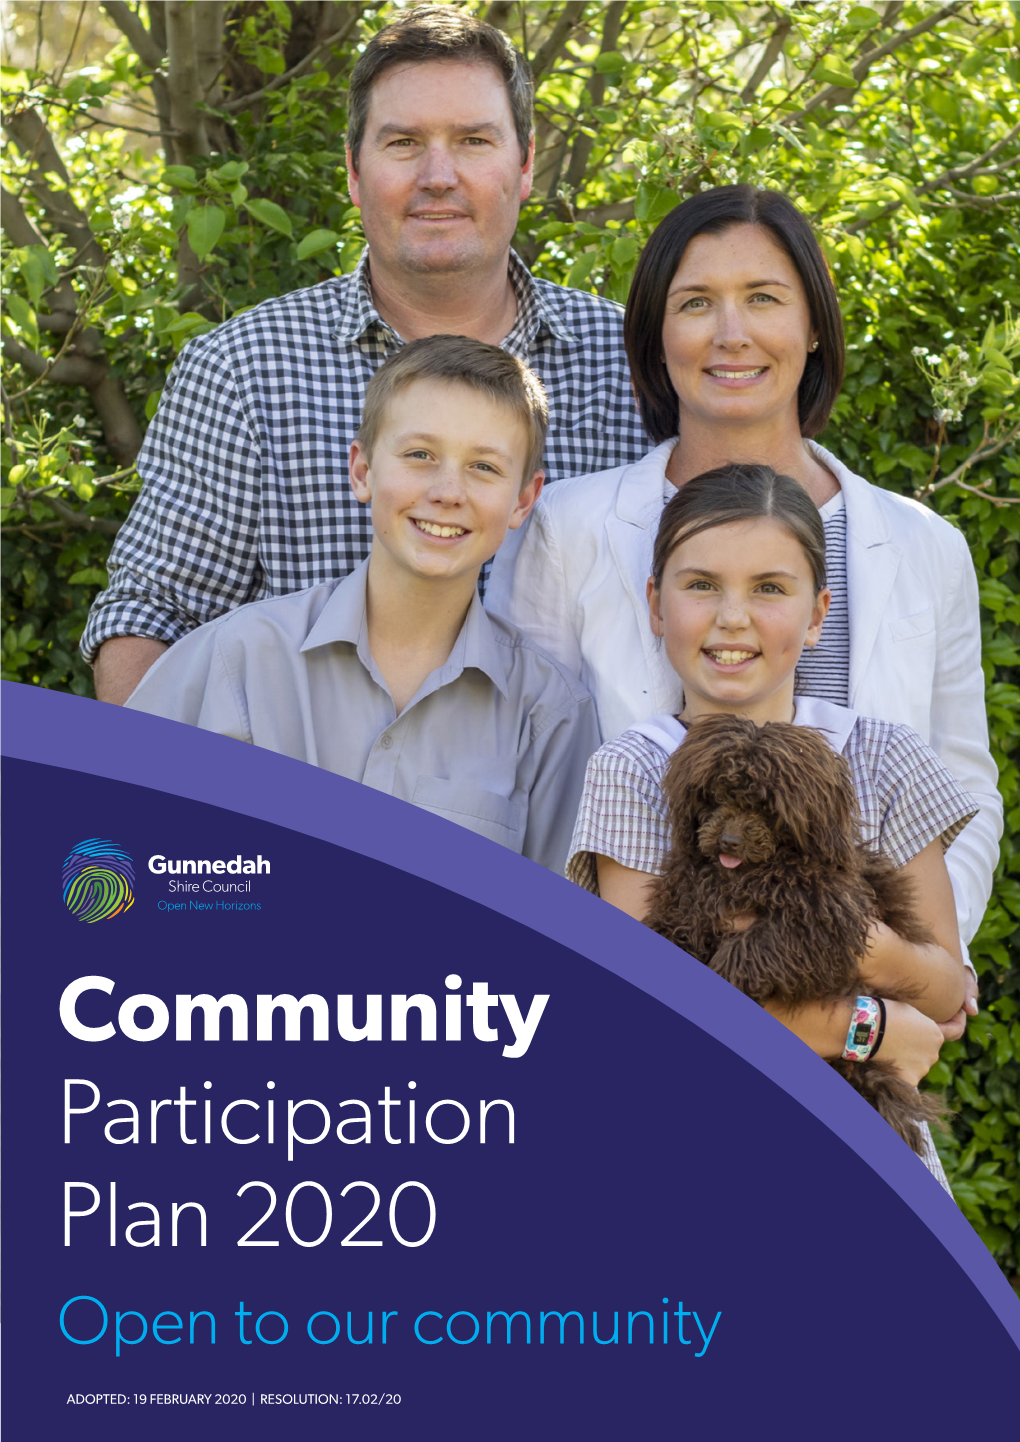 Gunnedah Council Community Participation Plan 2020